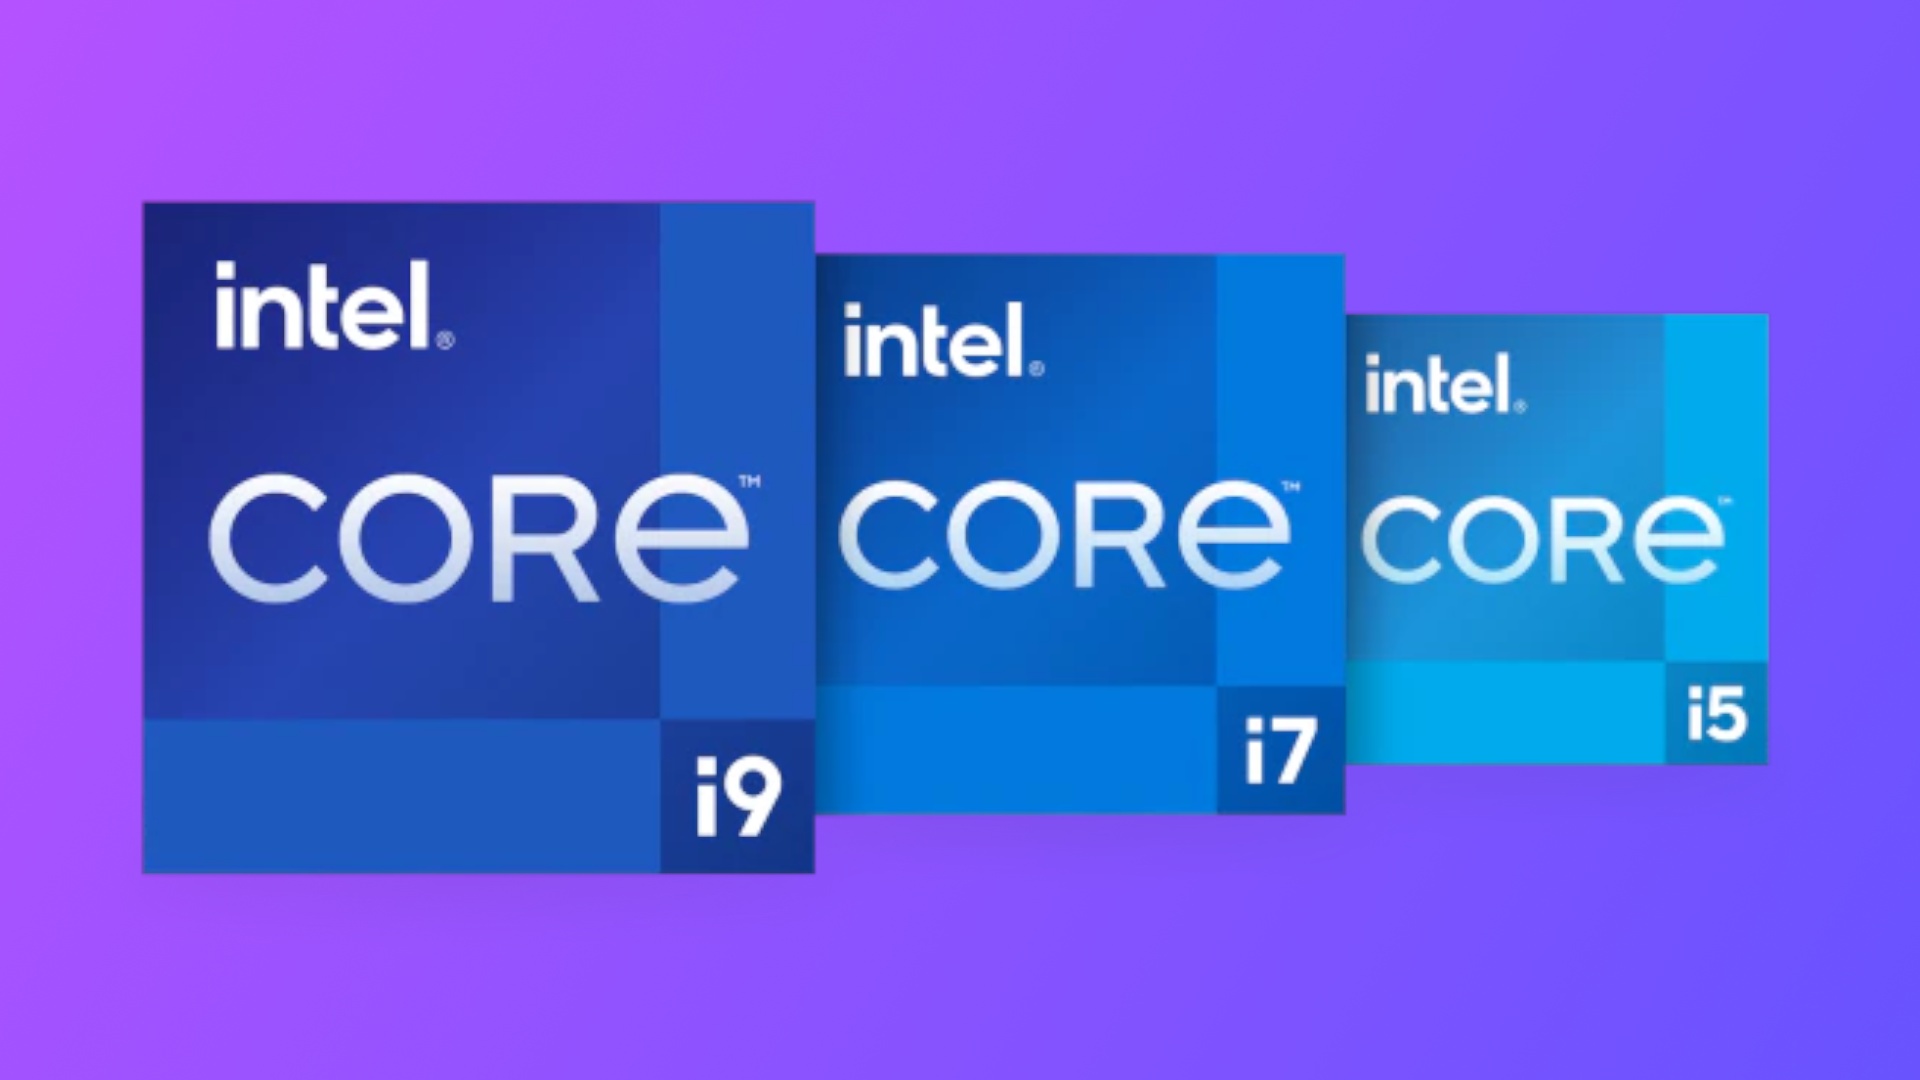 #Wenn das Intels neue CPUs sind, gibt es kaum Gründe zu wechseln